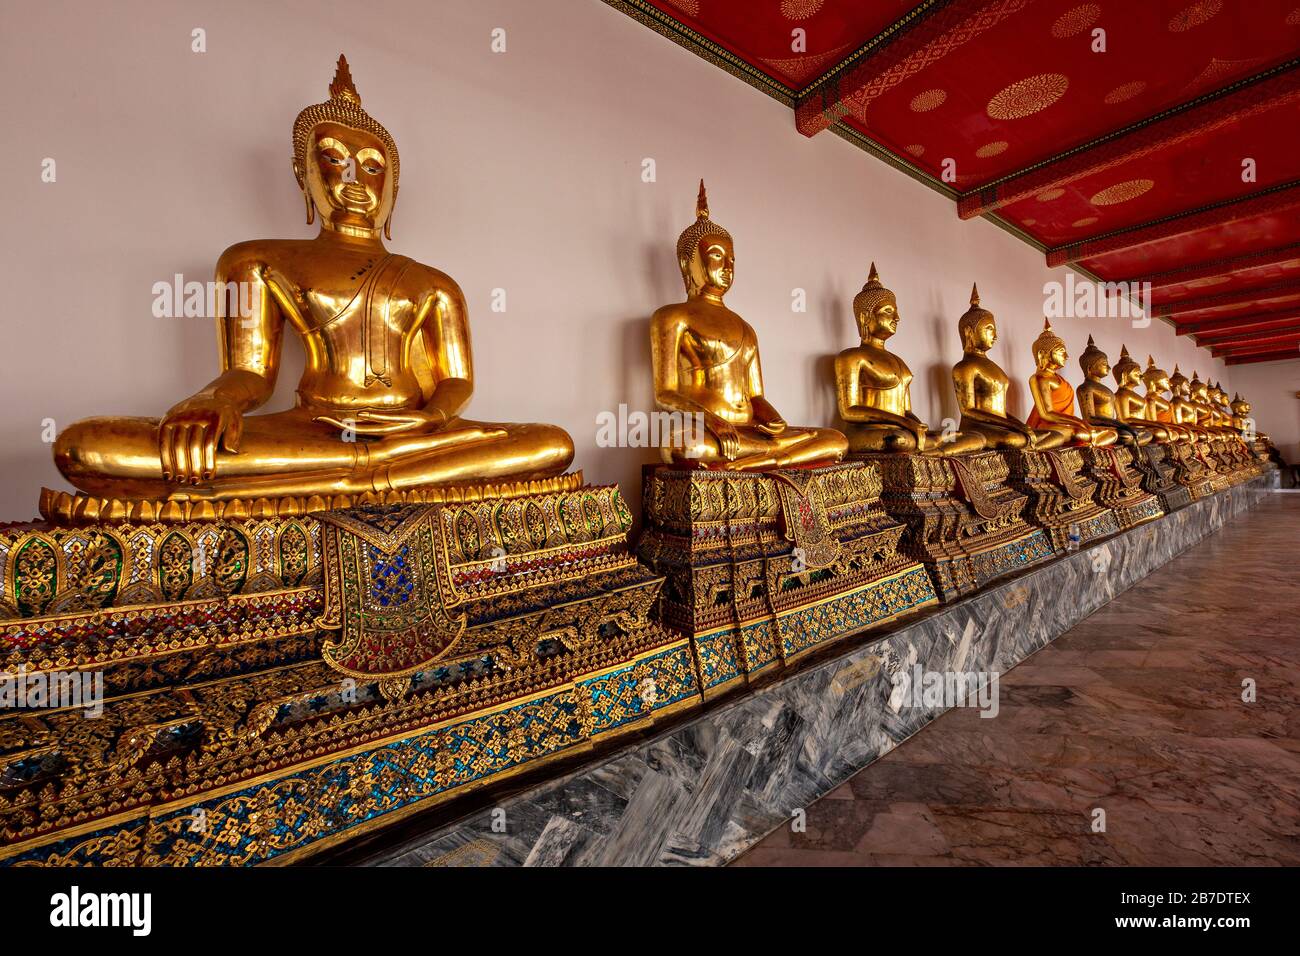 Rangée de statues de Bouddha dans le temple bouddhiste connu sous le nom de Wat Pho, à Bangkok, Thaïlande Banque D'Images